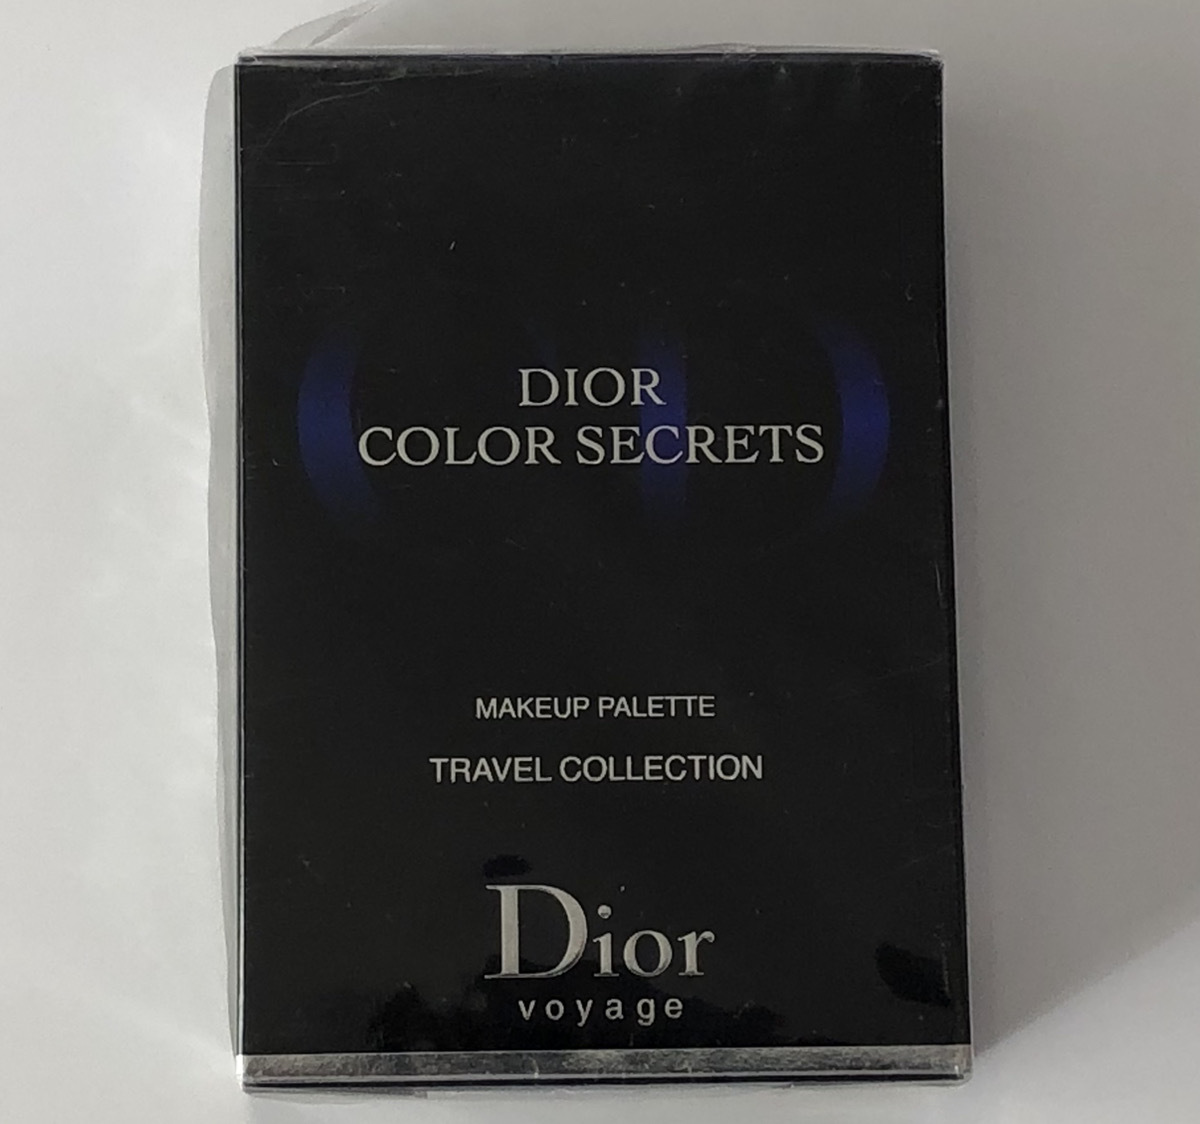 [未開封品] Dior voyage ディオール ボヤージュ TRAVEL COLLECTION アイシャドウ パレット トラベル コスメ ブランド 化粧品 3348900717954_画像5